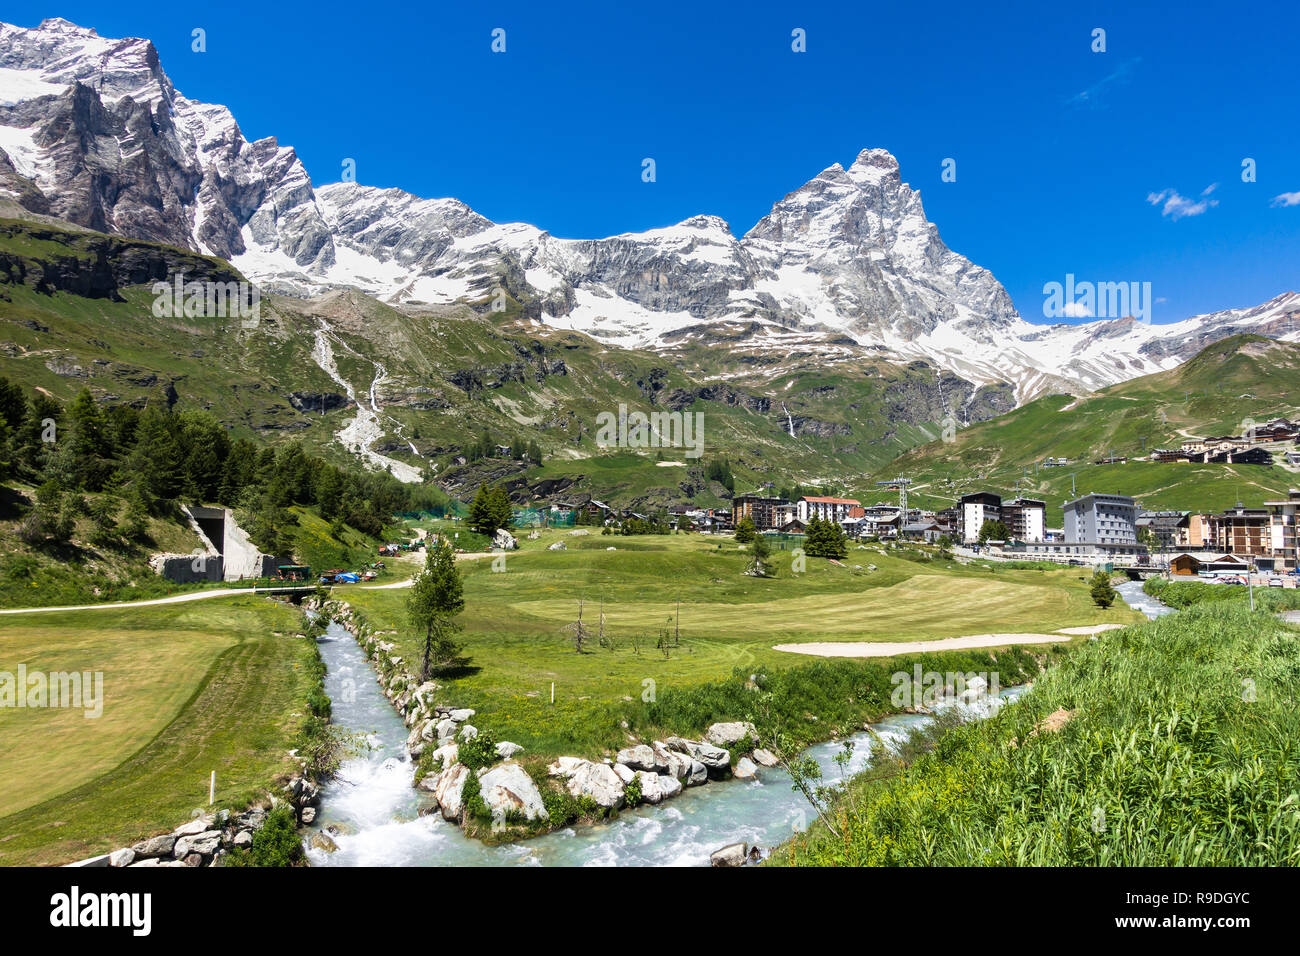 Panorama estivo di Breuil-Cervinia una località alpina cittadina ai piedi del Cervino (Cervino), Valle d'Aosta, Italia settentrionale Foto Stock